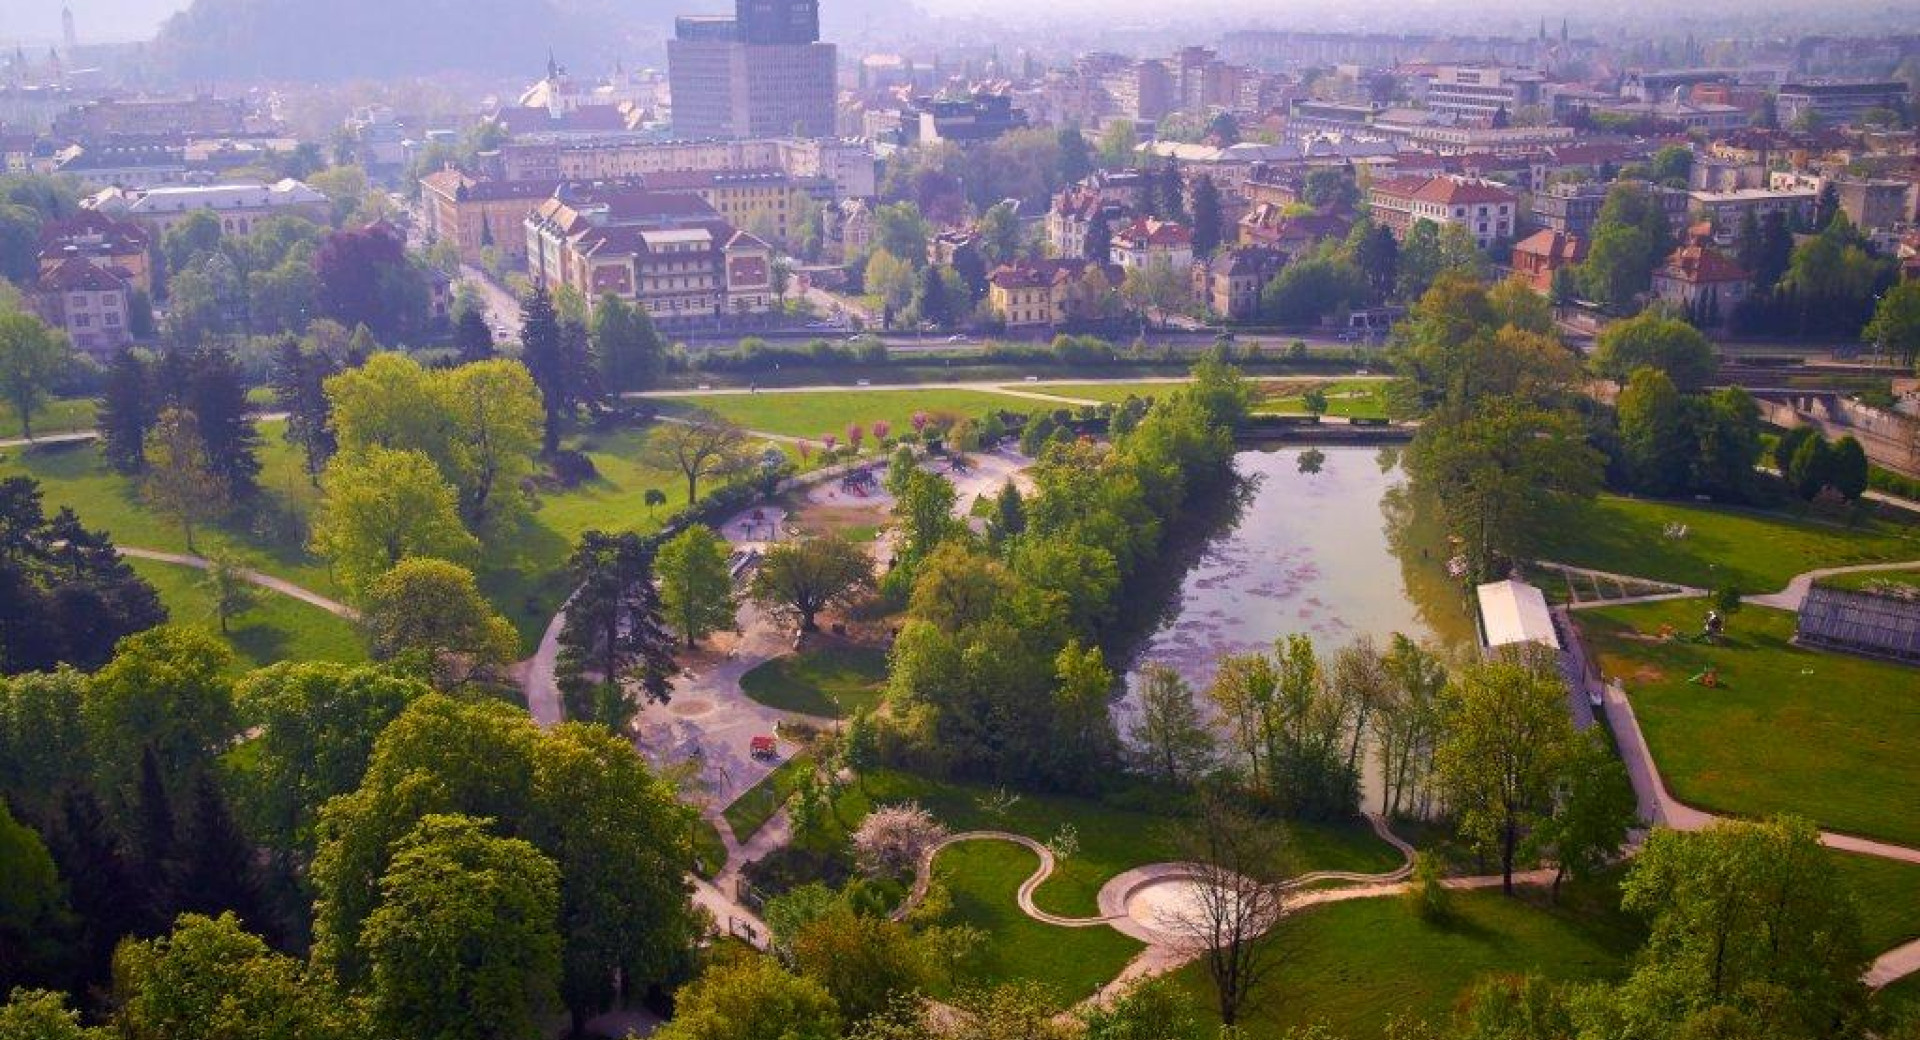 Maja v Ljubljani za petino več nočitev kot lani – prvih pet mesecev tako postreglo z izboljšanjem lanskega rekorda za 2 odstotka